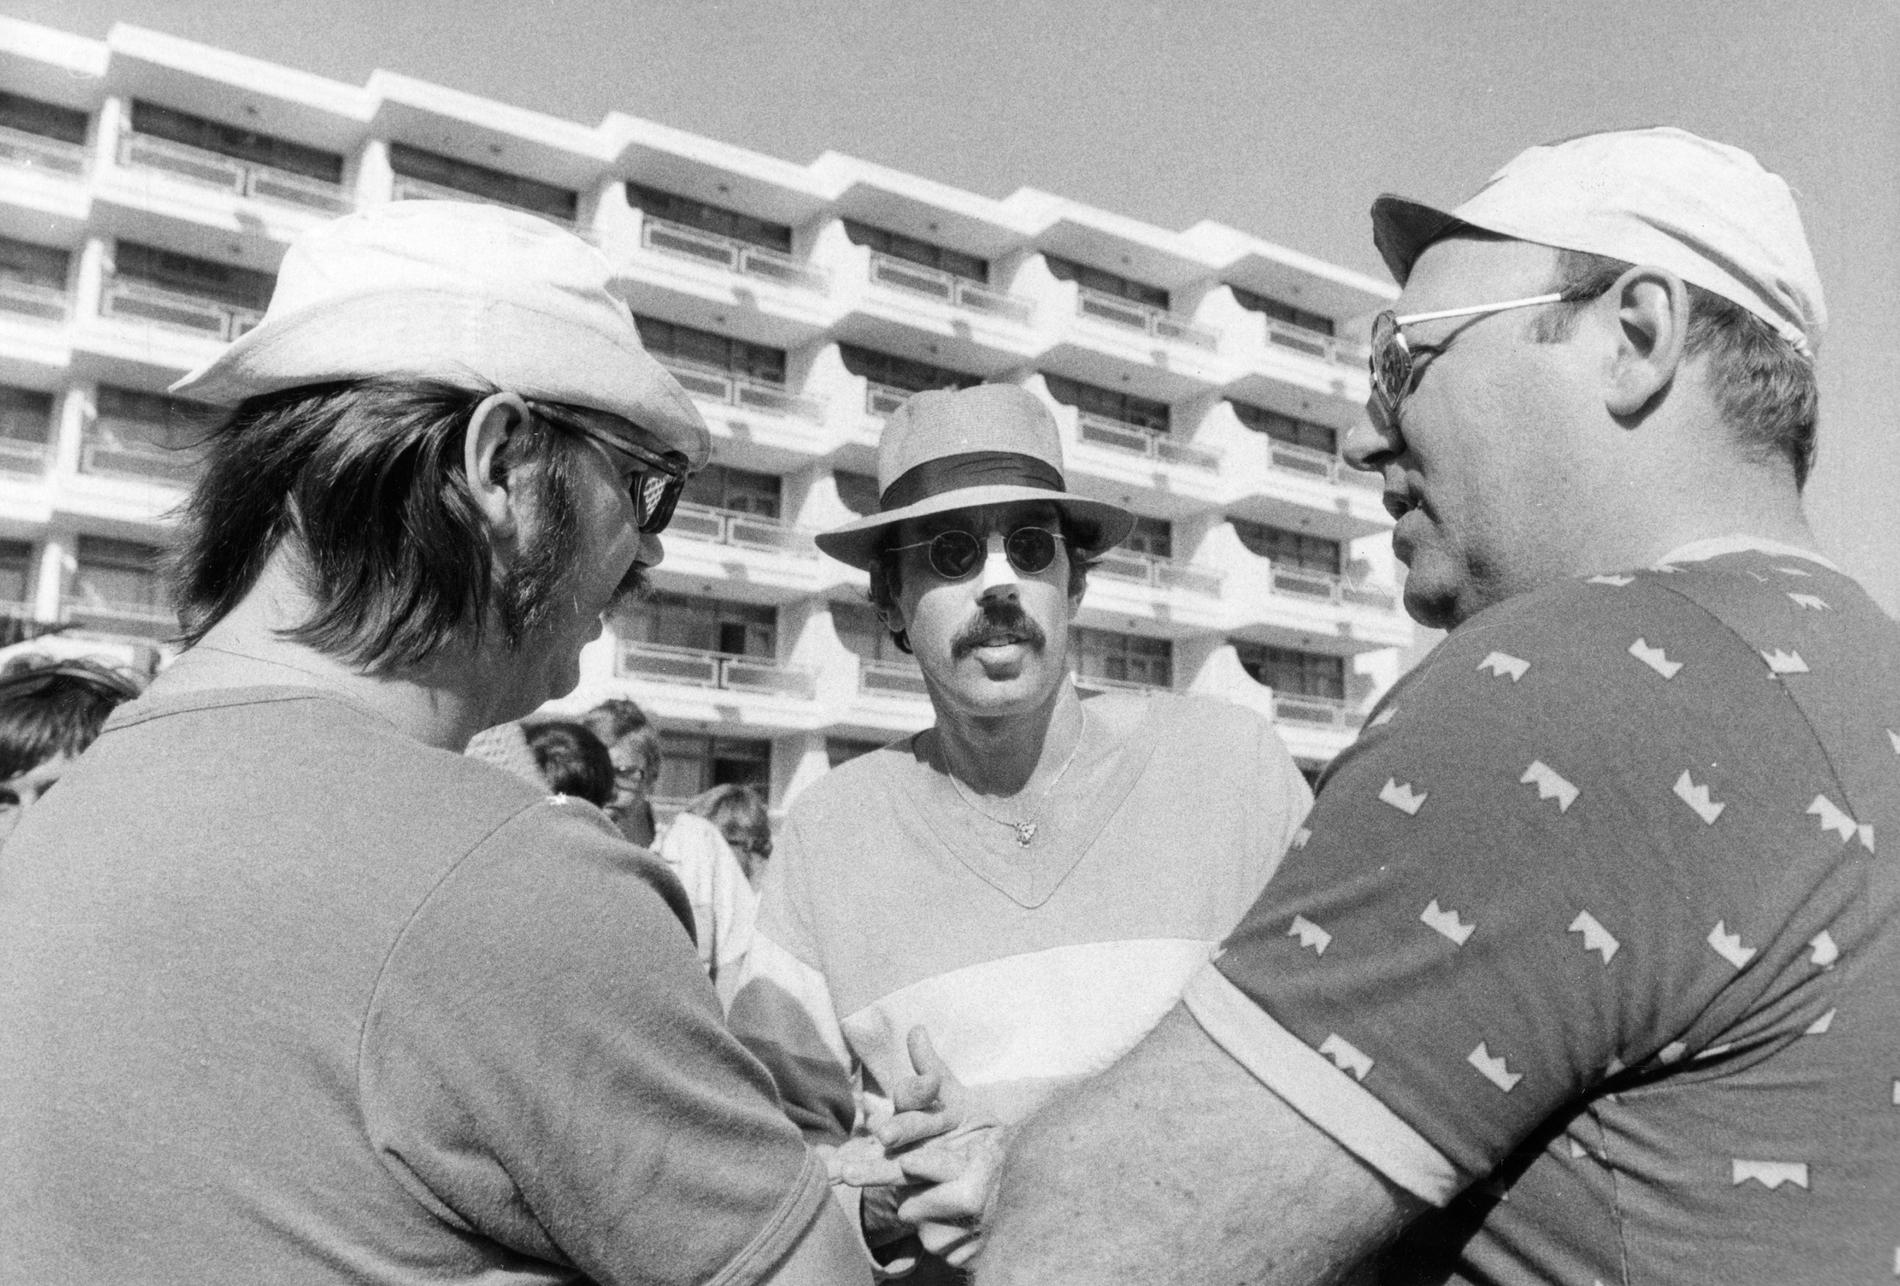 Inspelning av filmen ”Sällskapsresan” i San Agustin på Gran Canaria. Från vänster Sven Melander, Lasse Åberg och Weiron Holmberg.